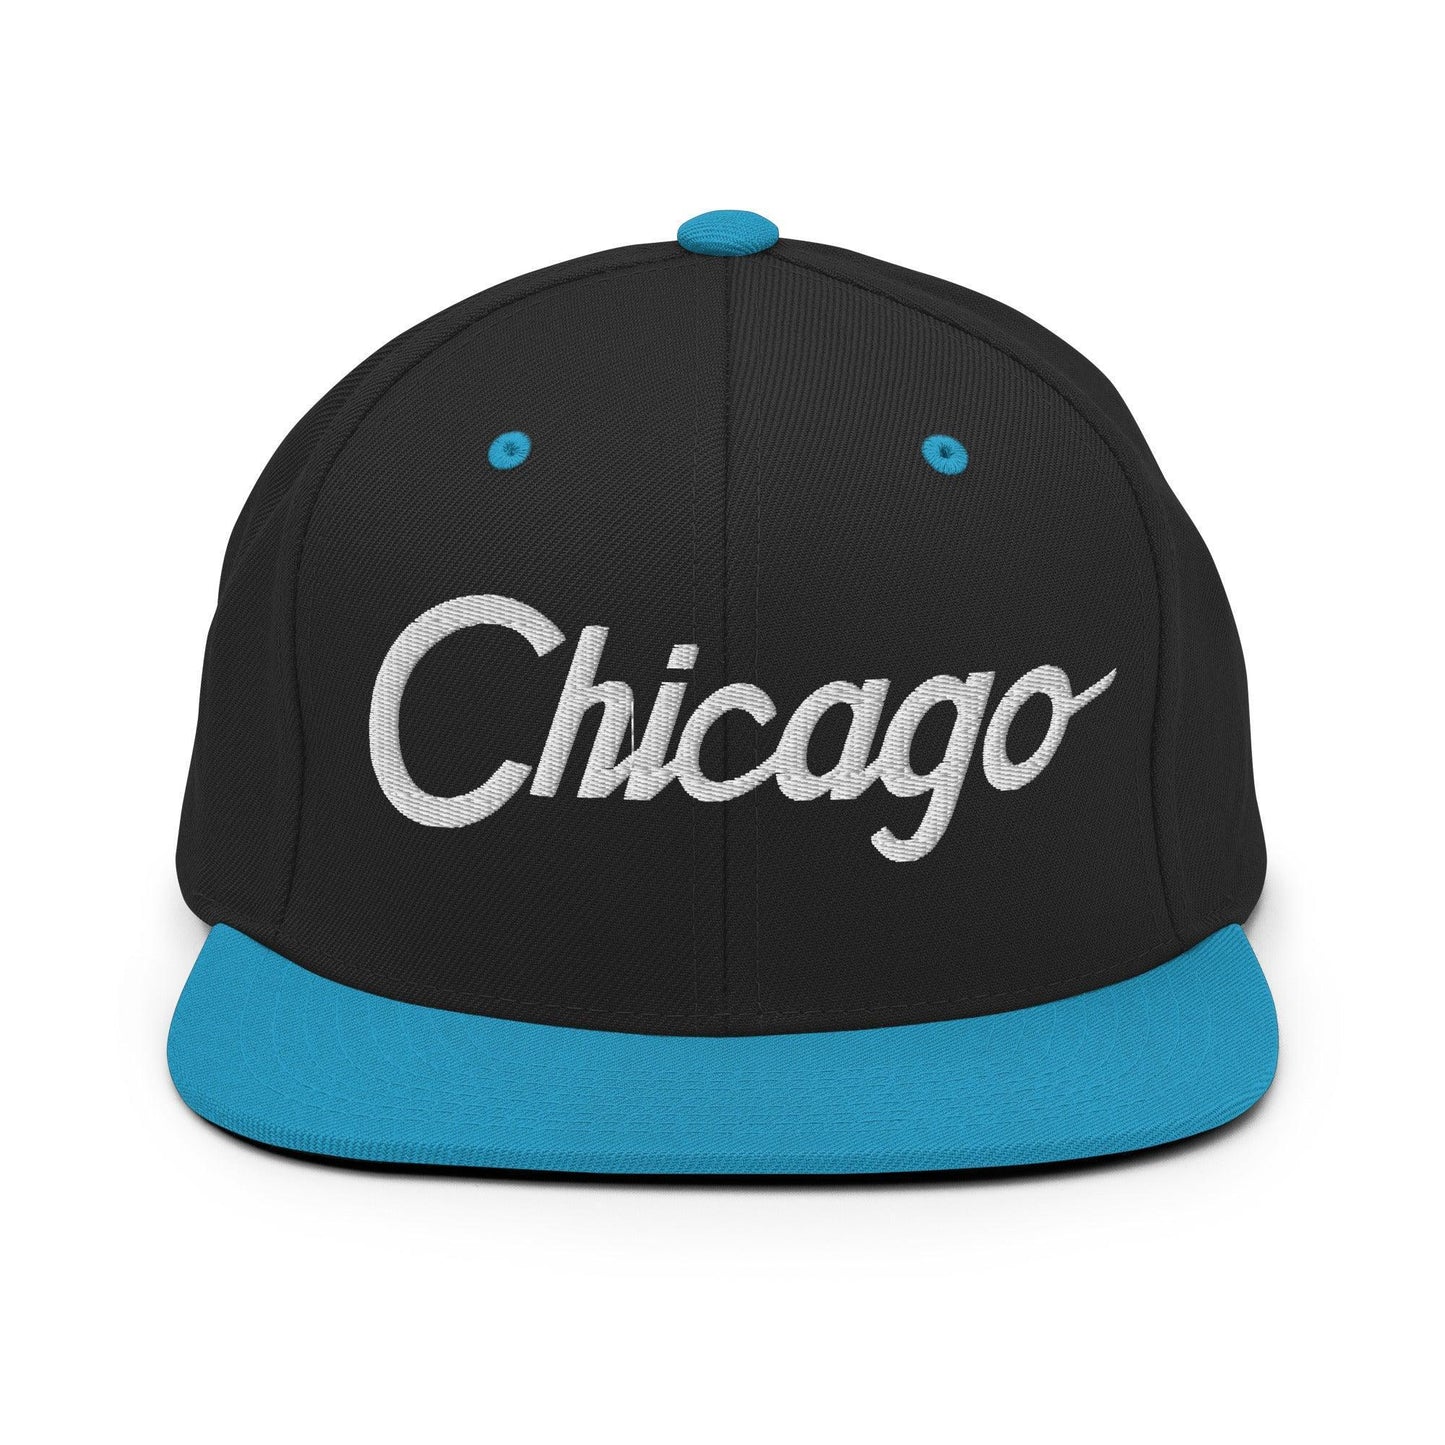 Chicago Script Snapback Hat Black/ Teal